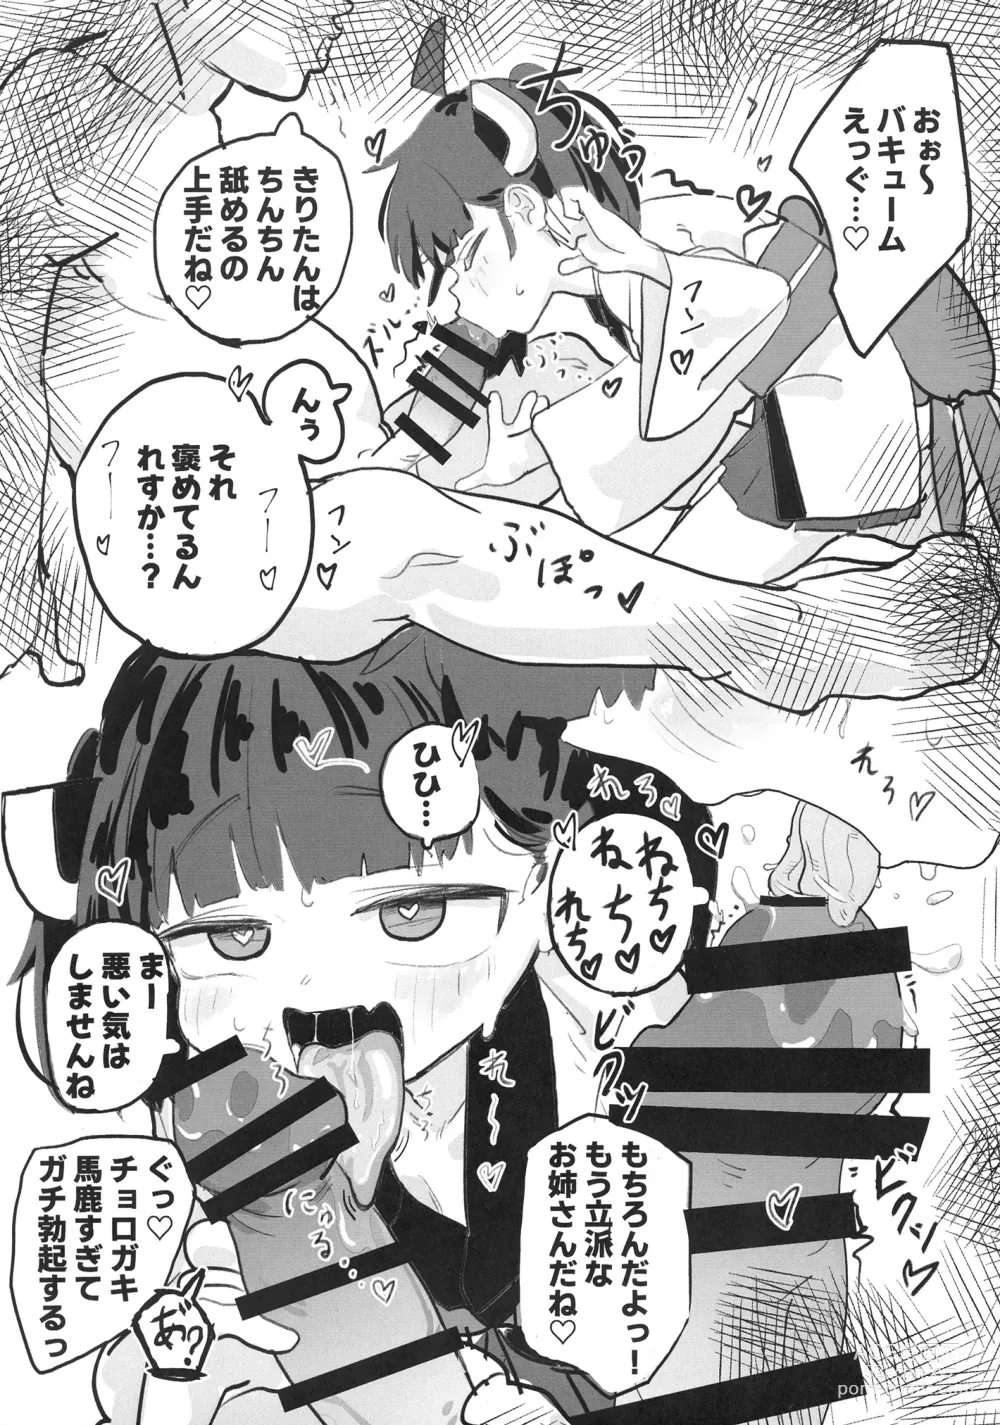 Page 7 of doujinshi Kiri tanto etchi shitai!